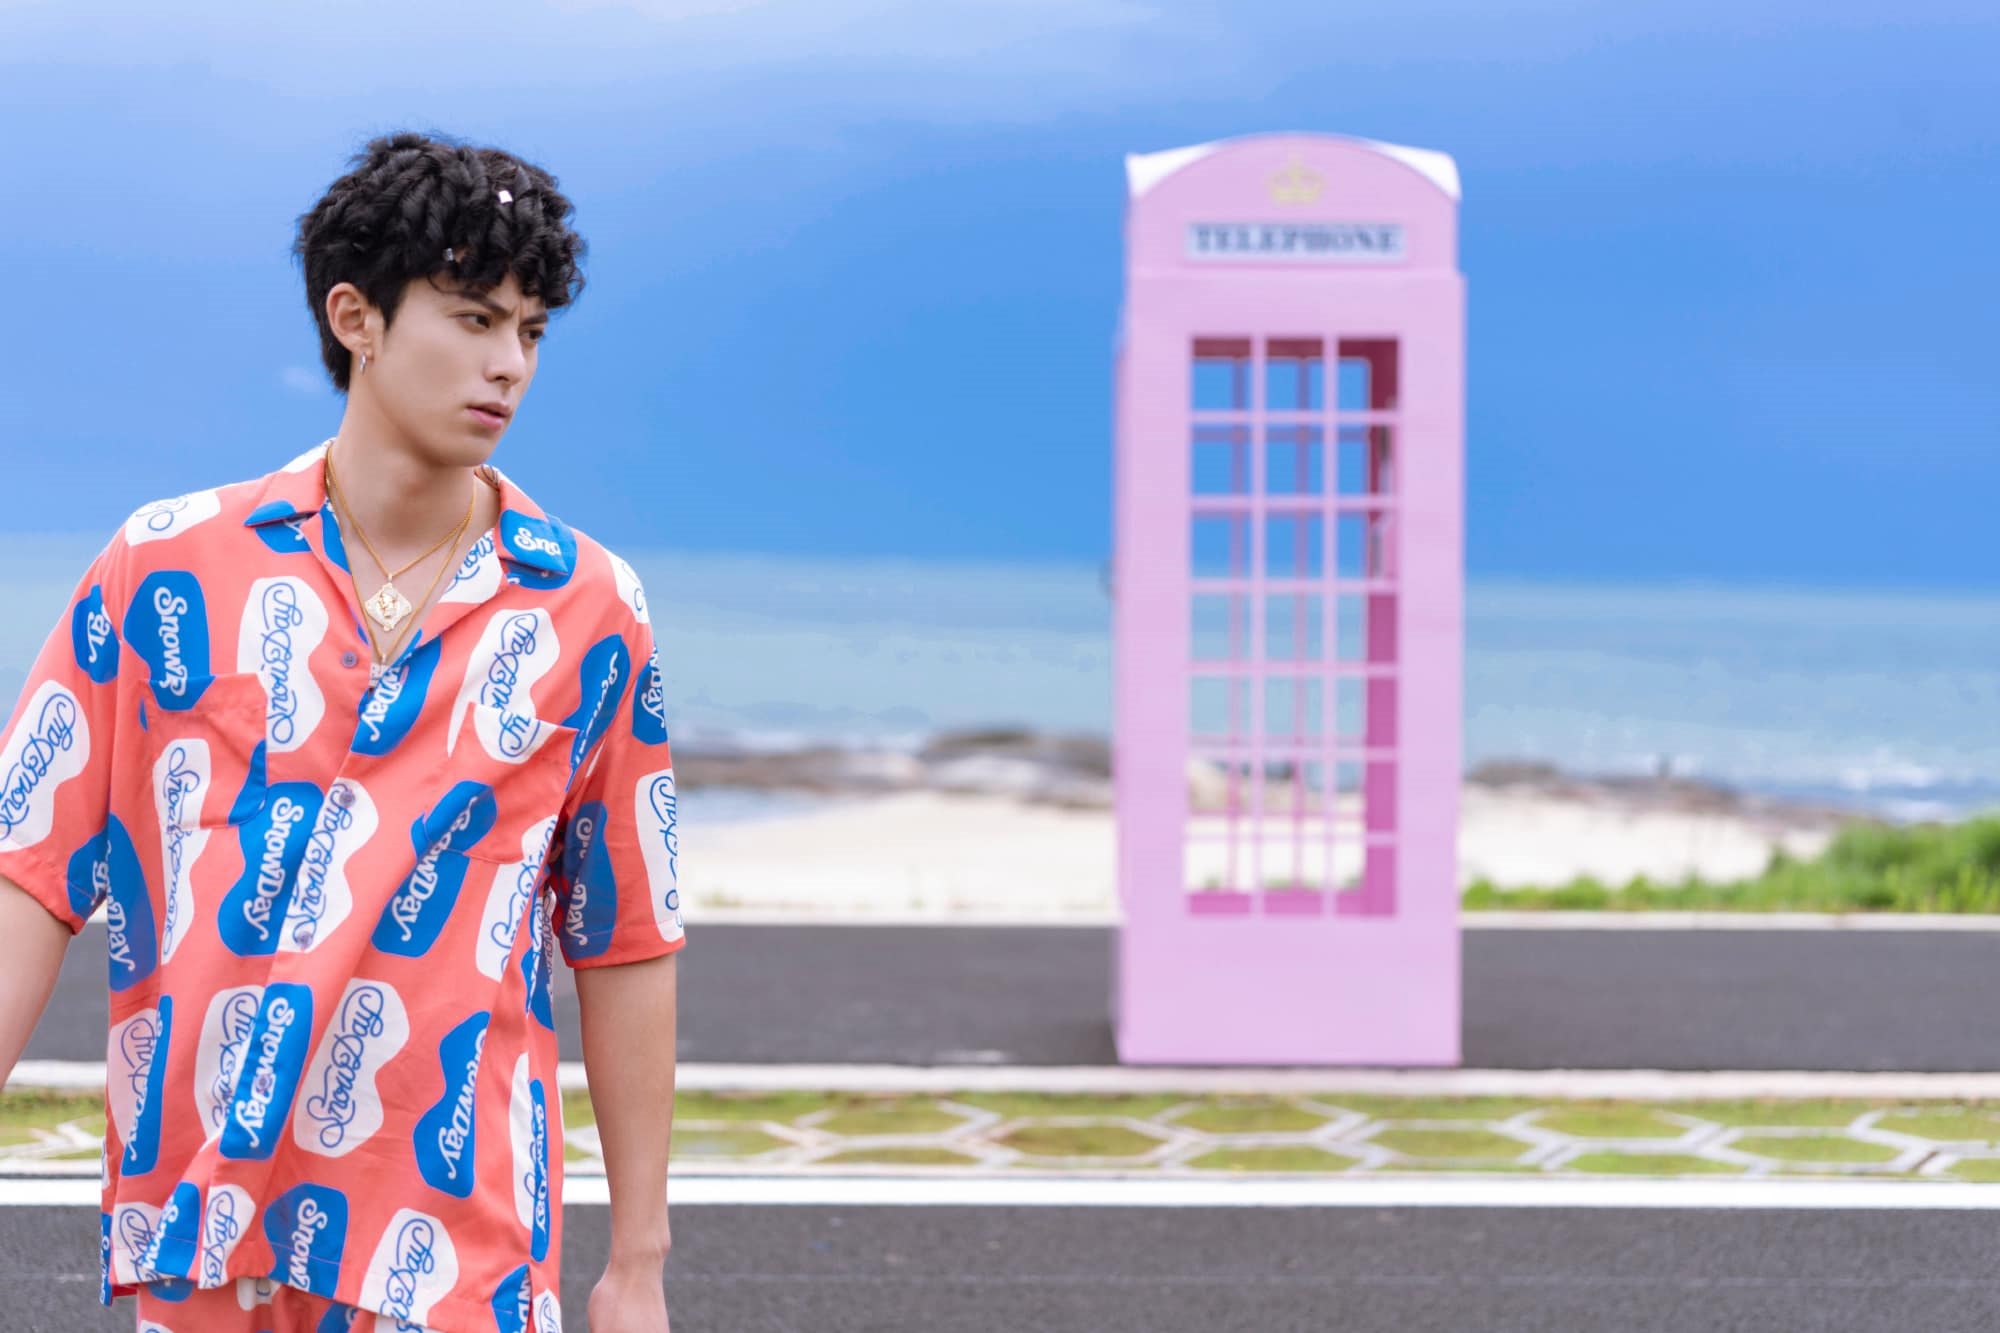 Vương Hạc Đệ khoe giọng cuốn hút trong MV 'Điệu Tango trên bờ biển', mở khóa vai trò mới: Vừa rap vừa đạo diễn cho sản phẩm âm nhạc đầu tay - Ảnh 5